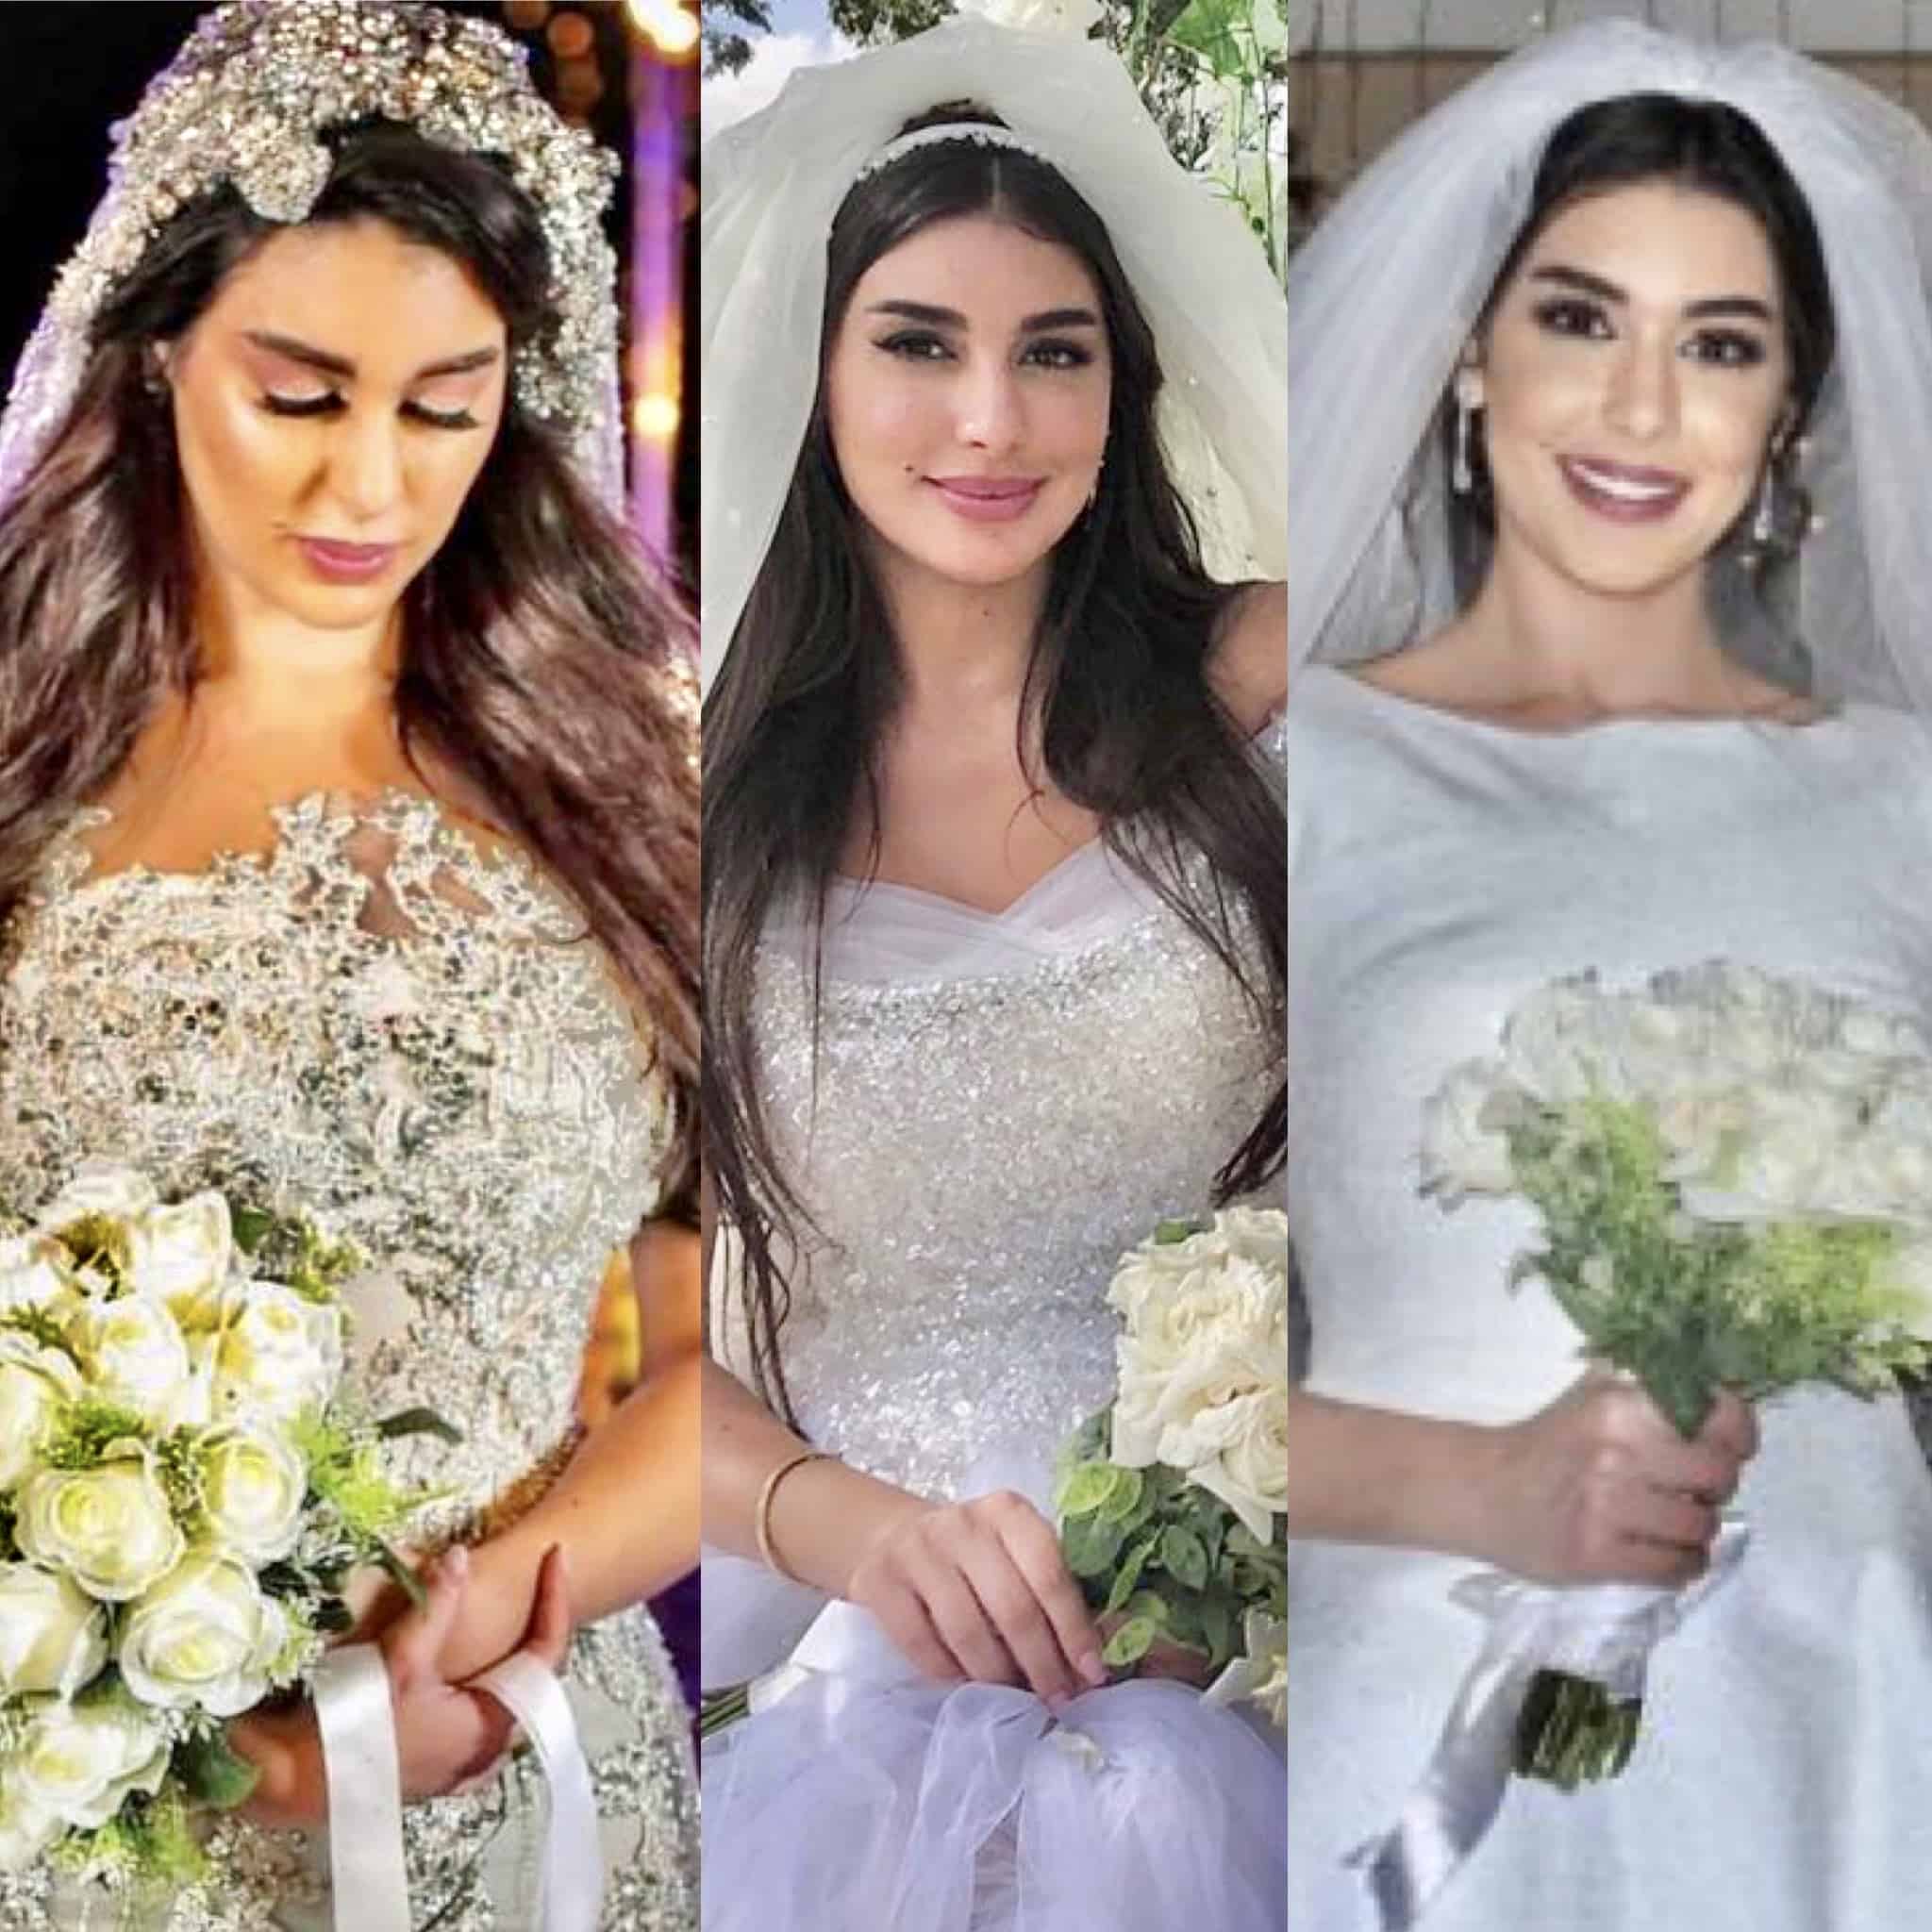 Le mariage de Yasmine Sabry